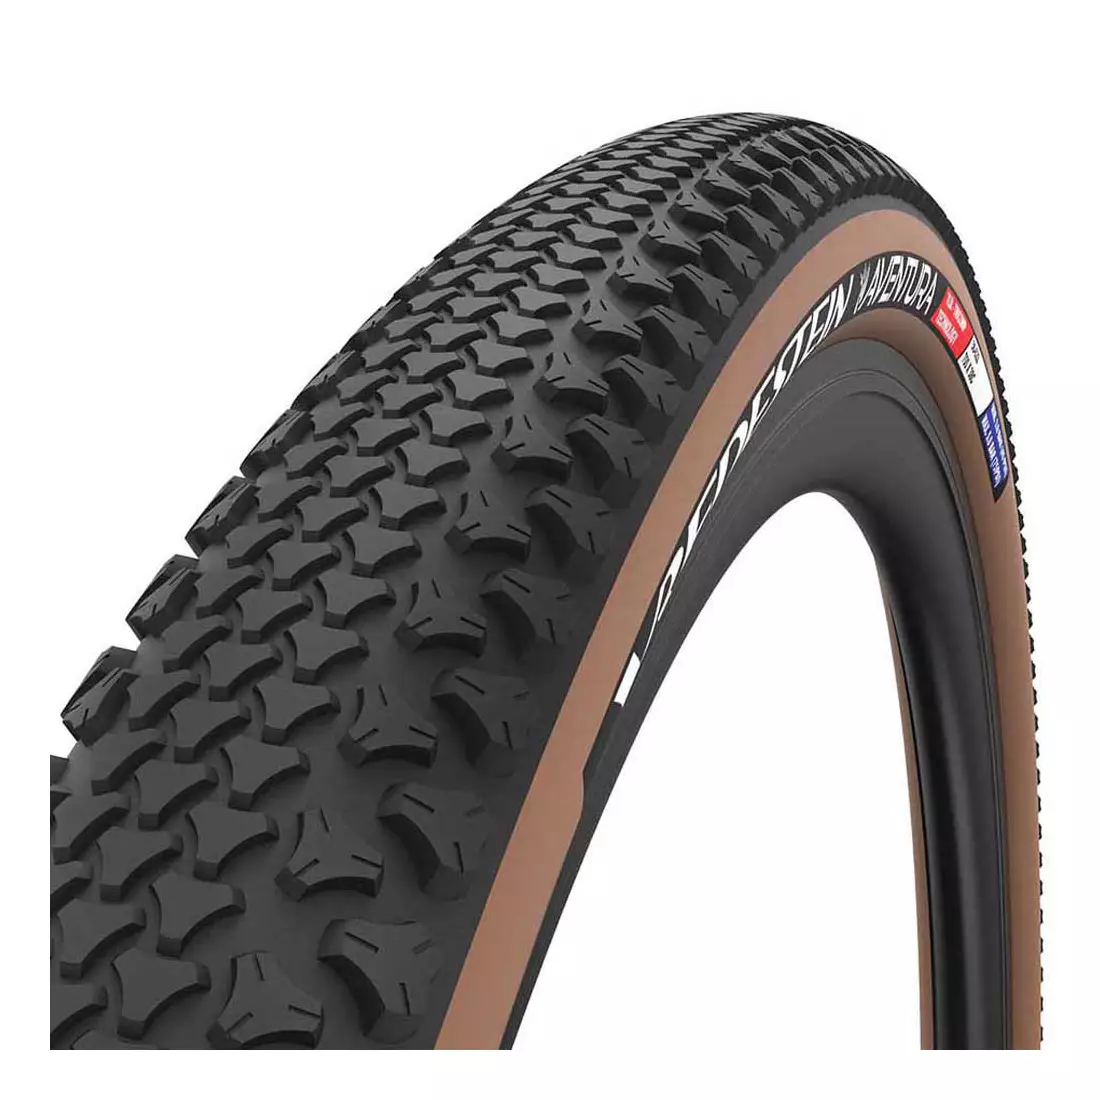 VREDESTEIN šotolinové pneumatiky pro jízdní kola aventura 700x38 (38-622) tubeless ready brown VRD-28170